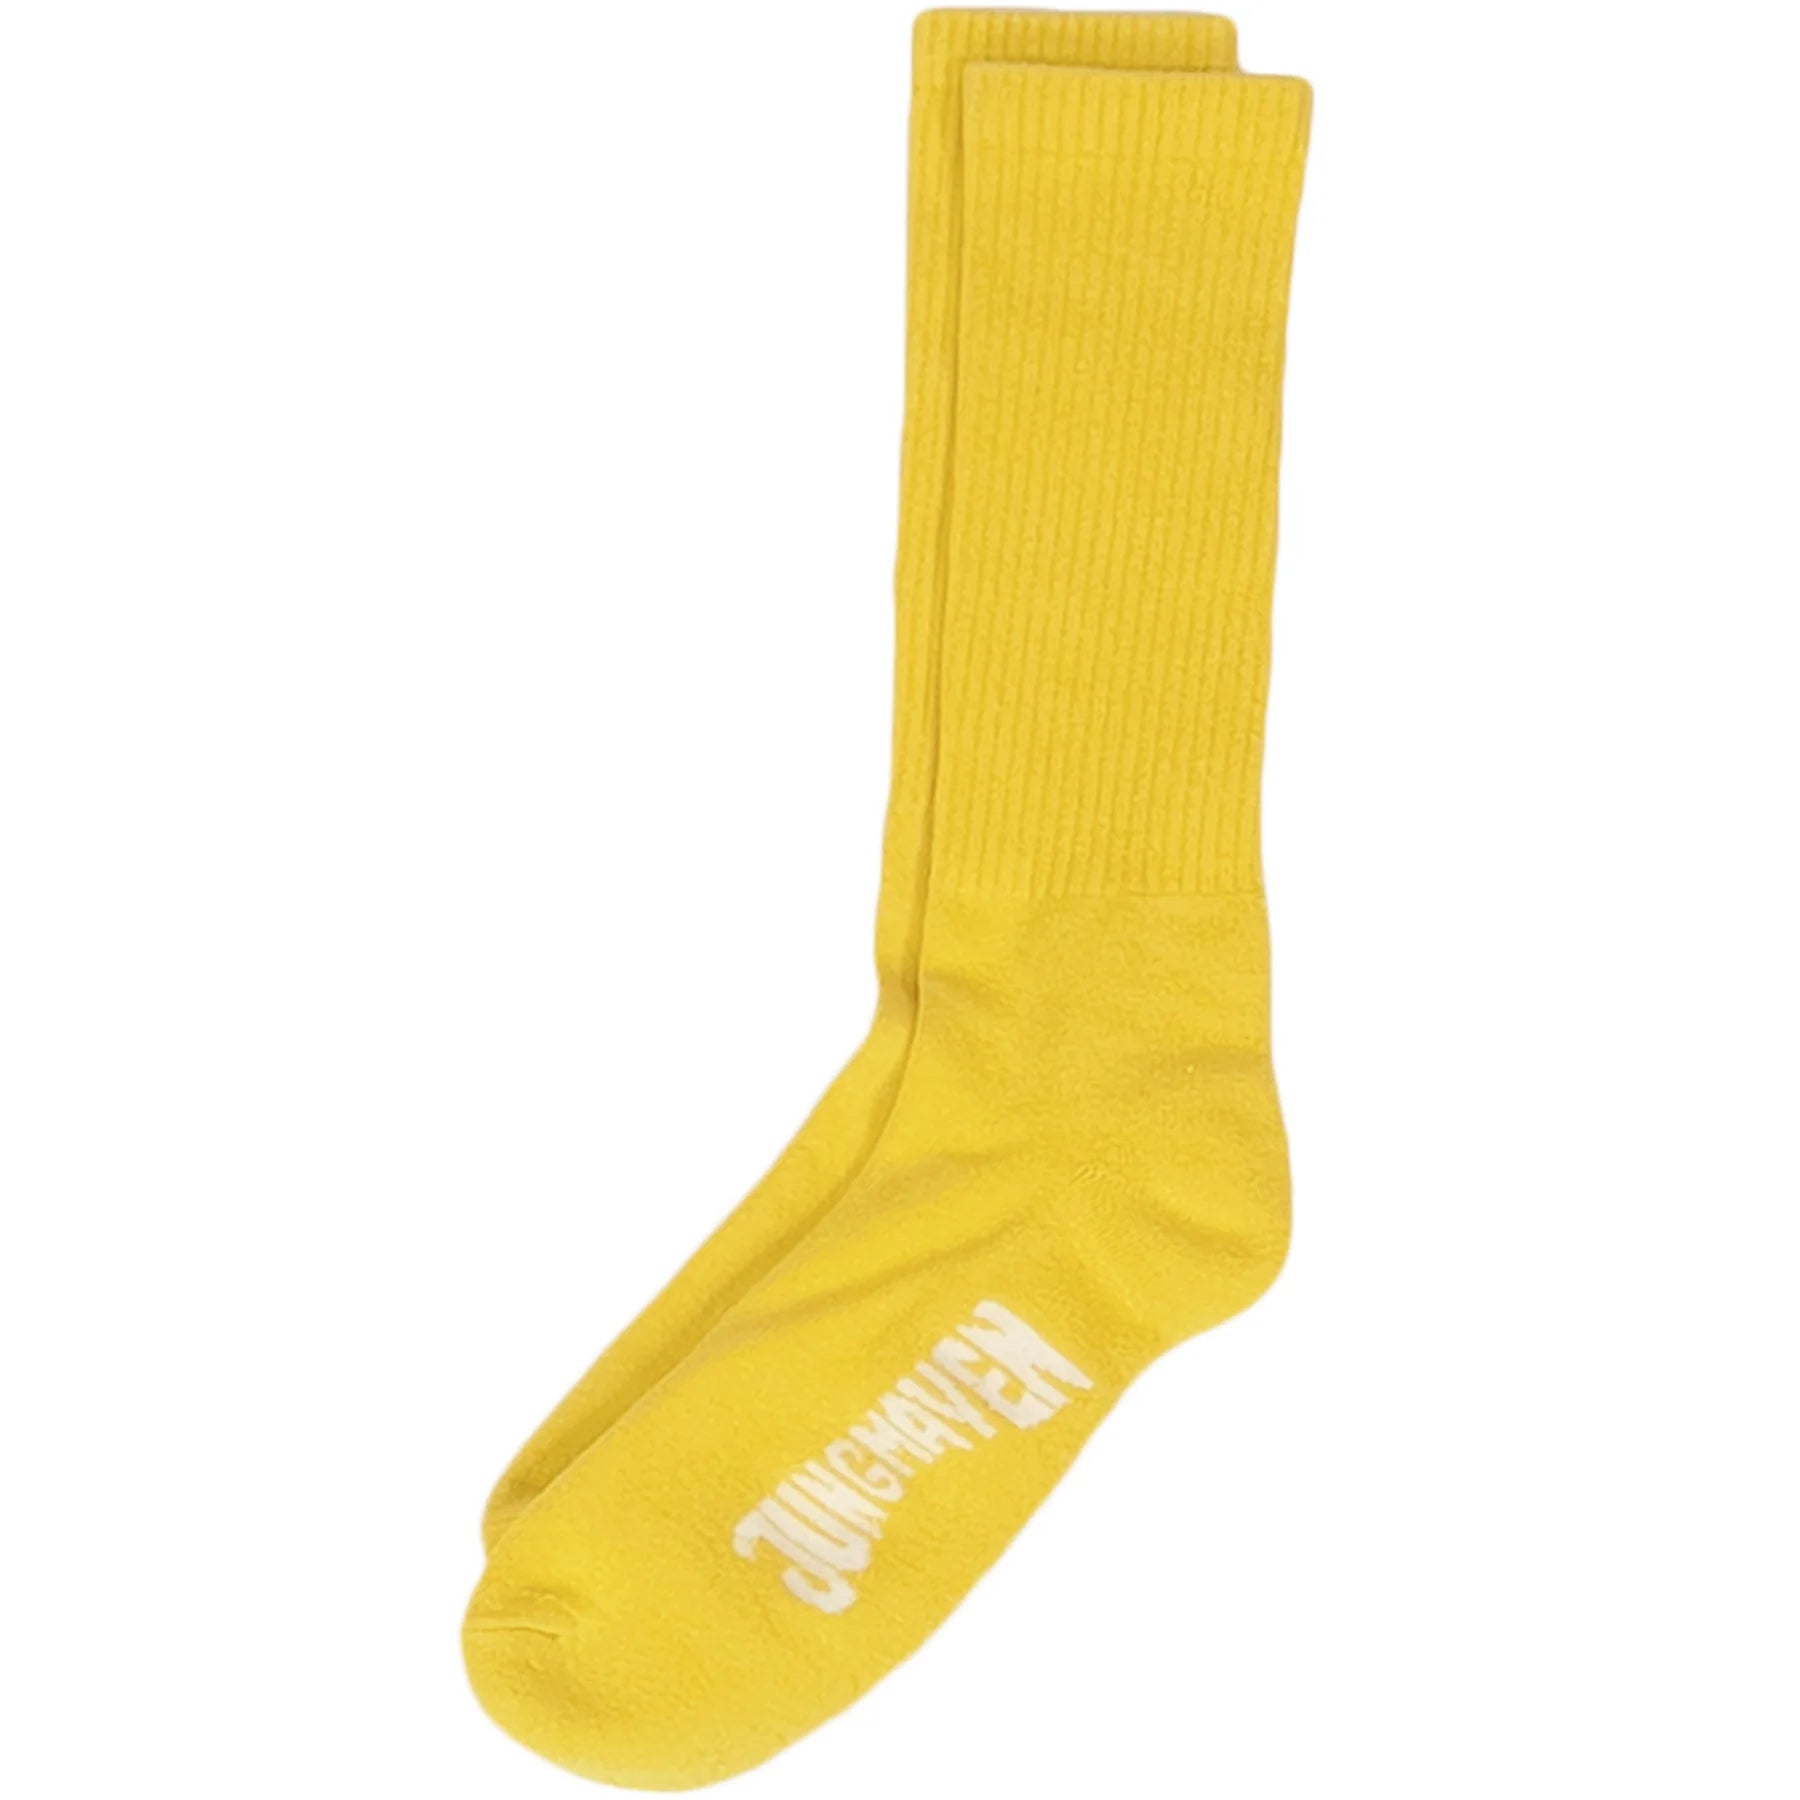 Hemp Crew Socks - Sunshine Yellow